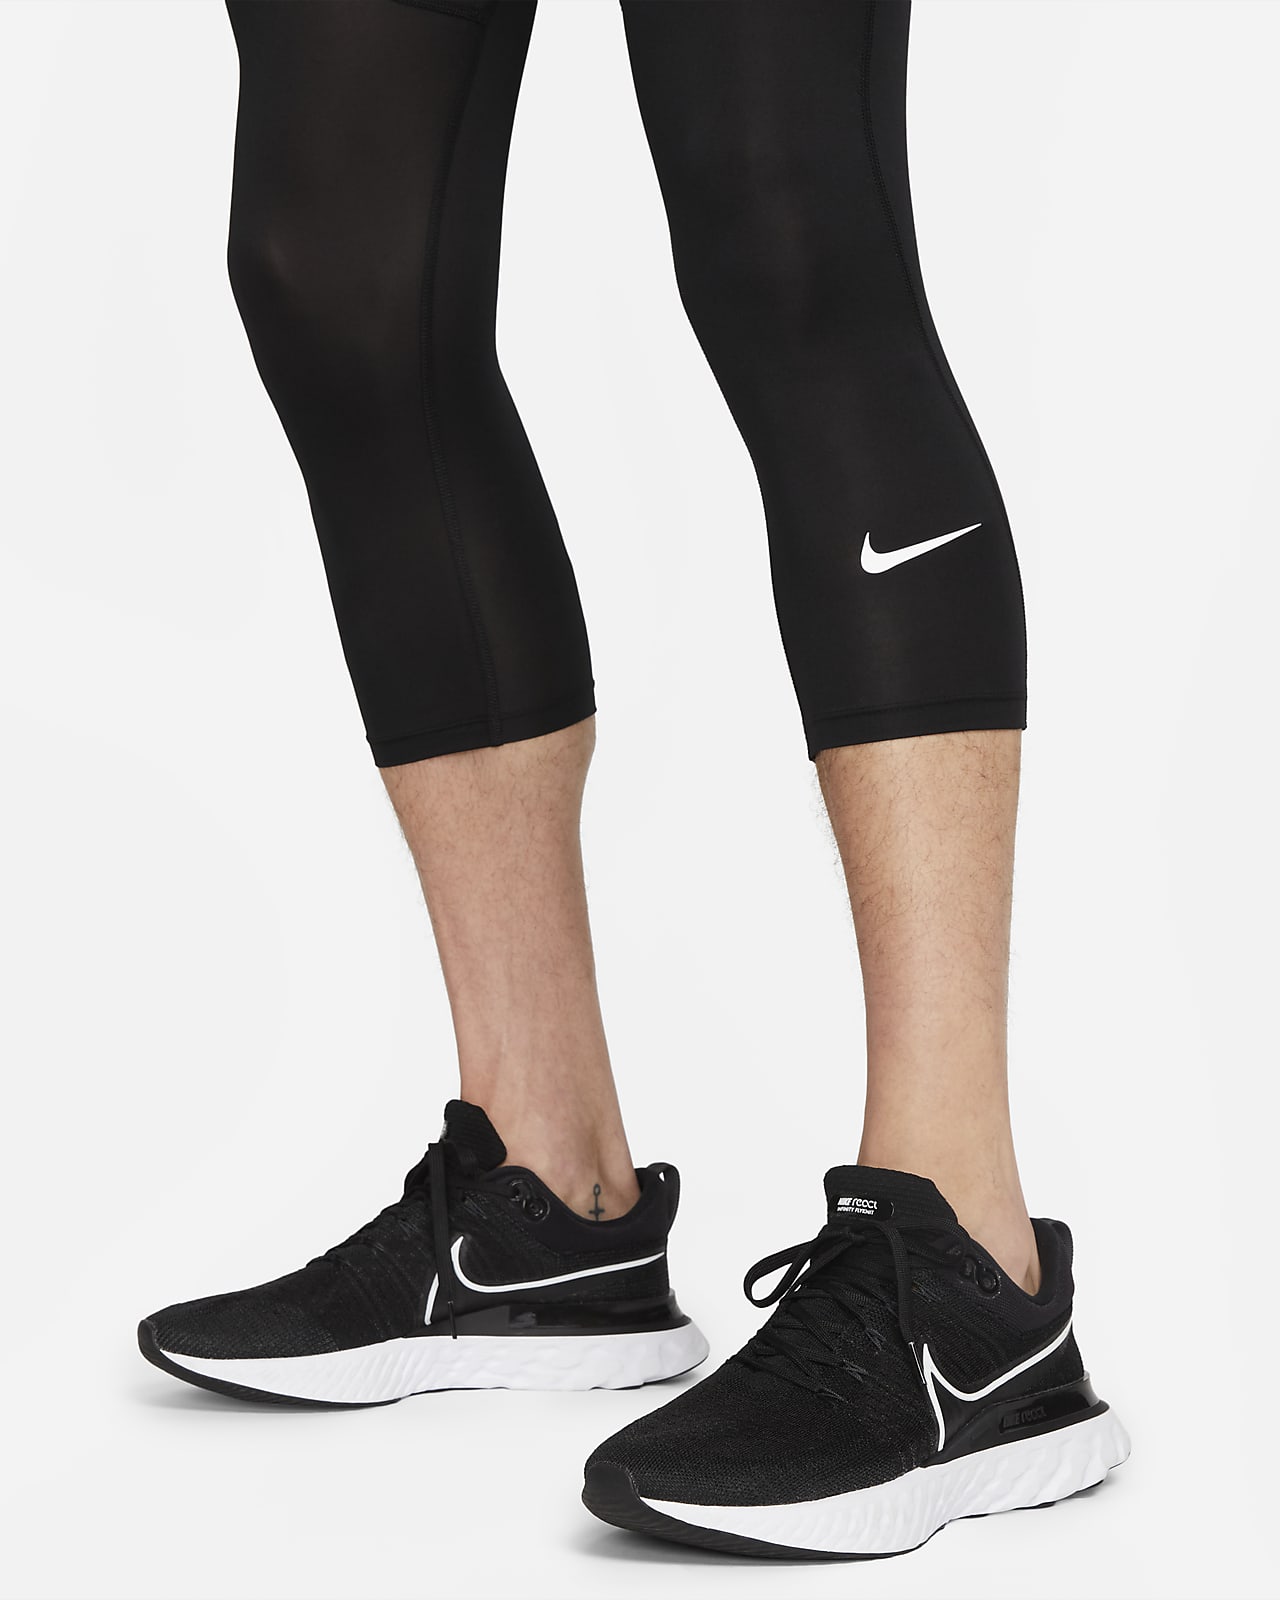 Collants et Leggings de Sport pour Homme. Nike FR